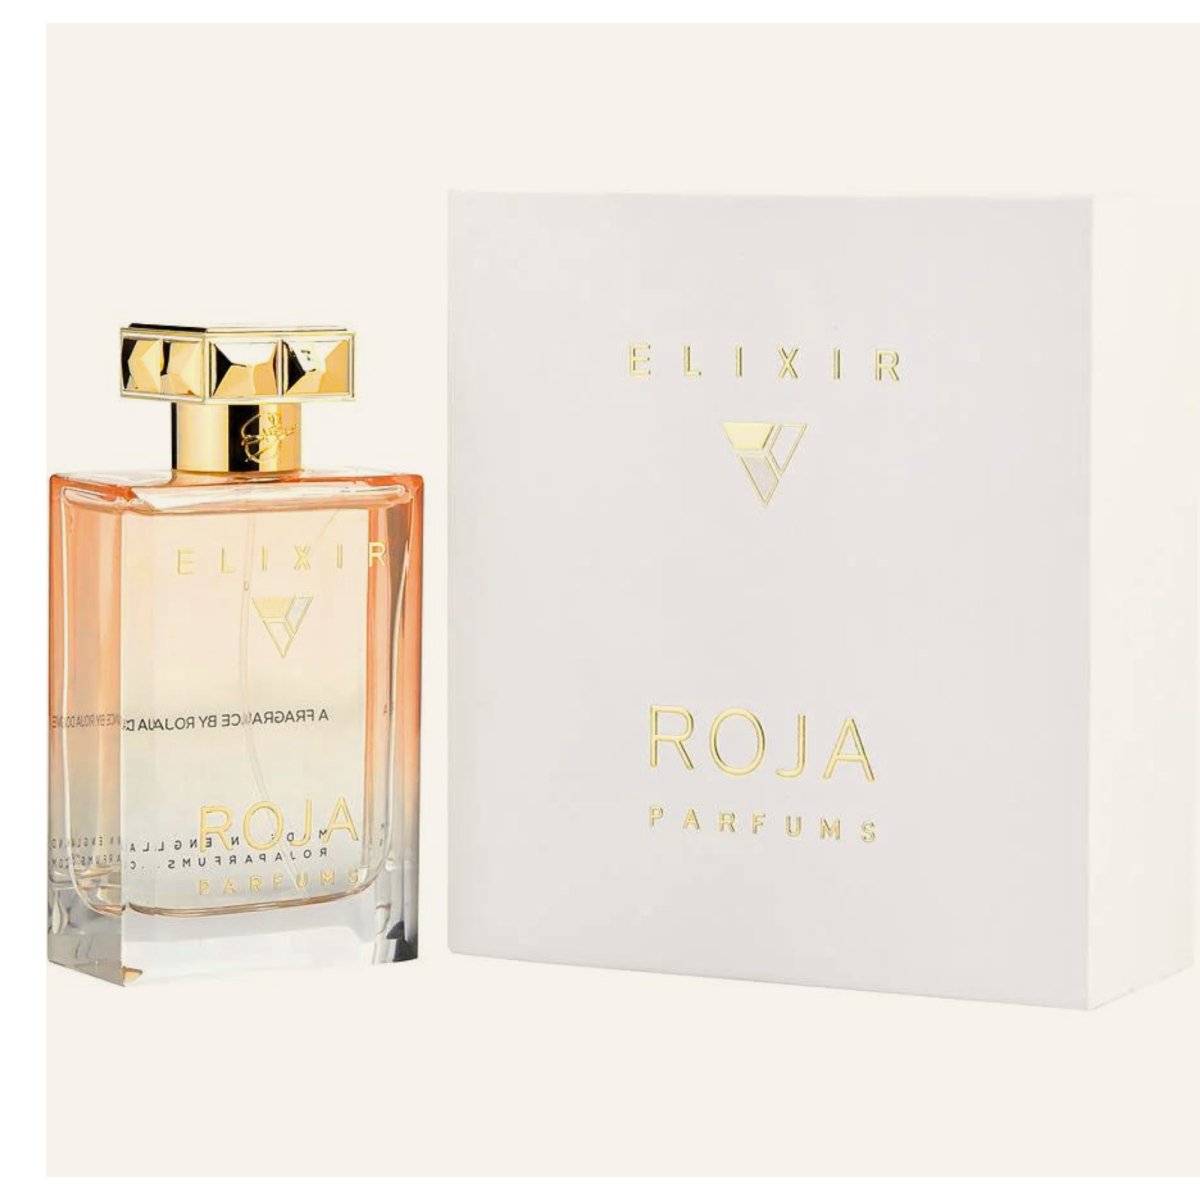 Roja Parfums Elixir Essence De Parfum Eau De Parfum Spray 3.4 oz - Perfume Headquarters - Roja Parfums - 5060370911592 - Fragrance